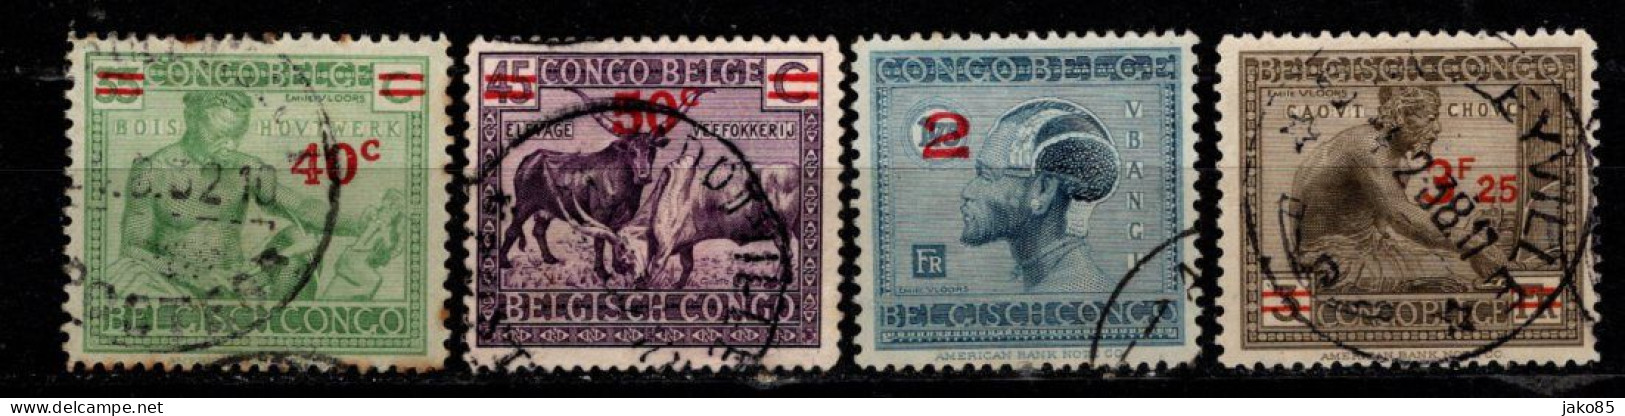 - CONGO BELGE - 1931 / 32 - YT N° 159 / 161A - Oblitérés - Surchargés - Série Complète - Neufs